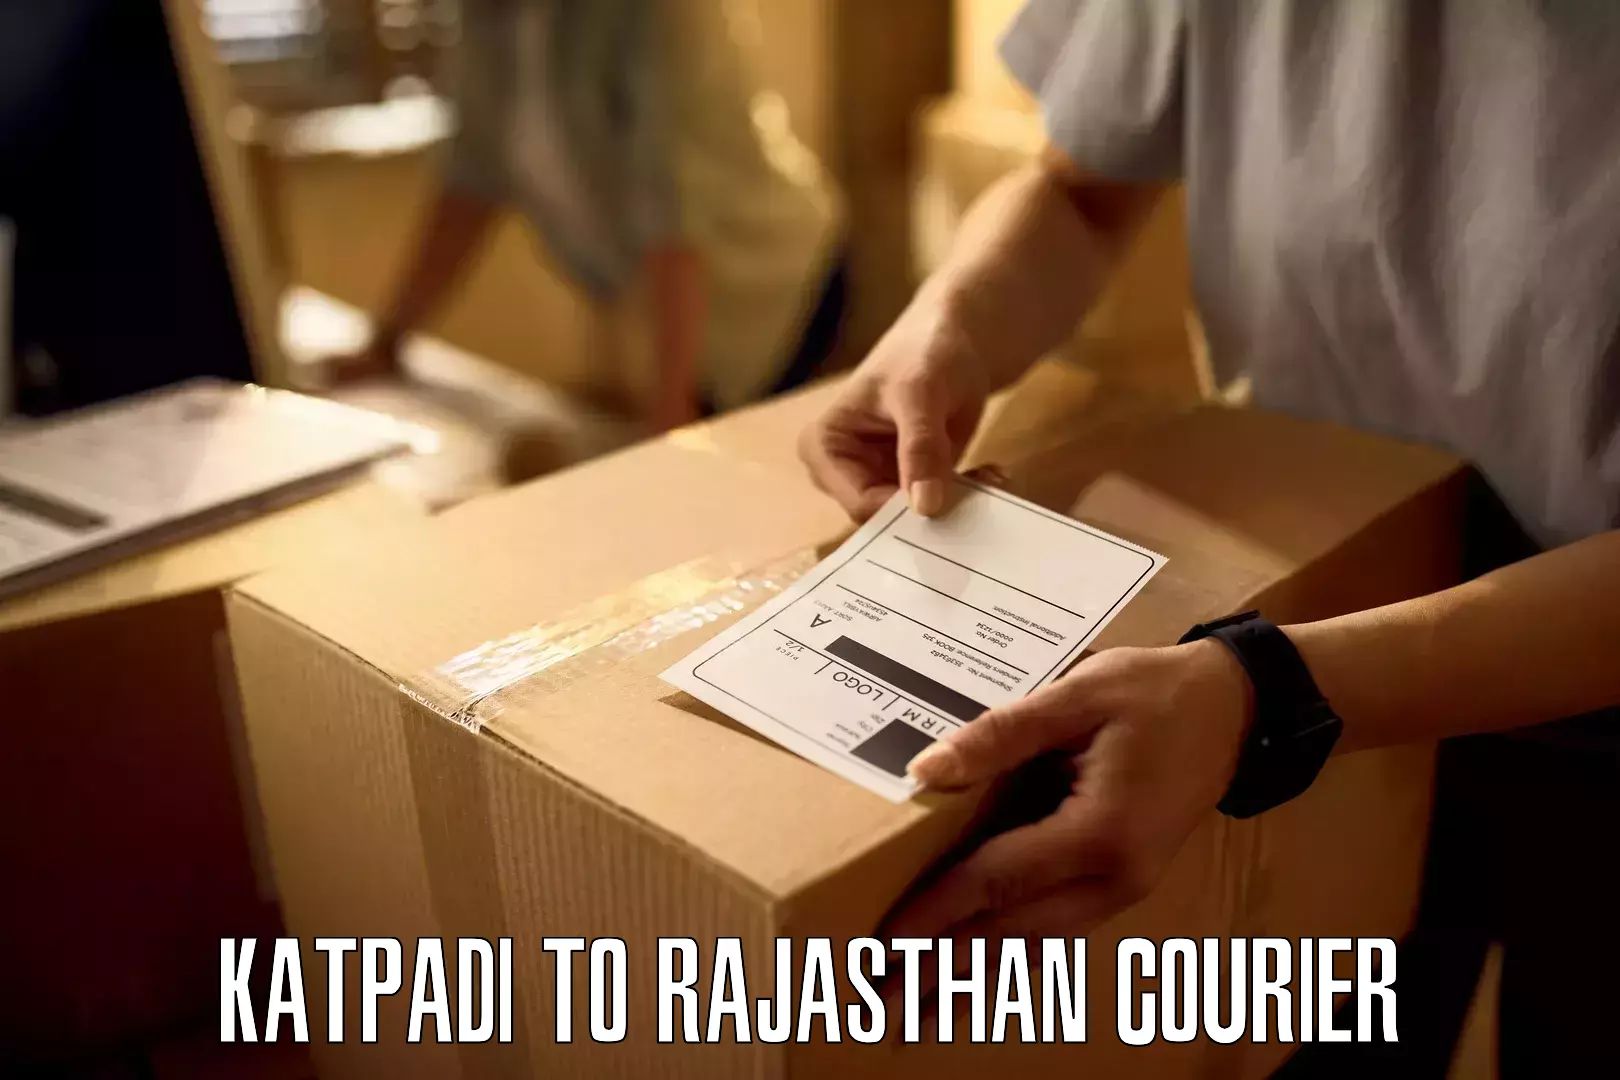 Nationwide shipping coverage Katpadi to Rajasthan